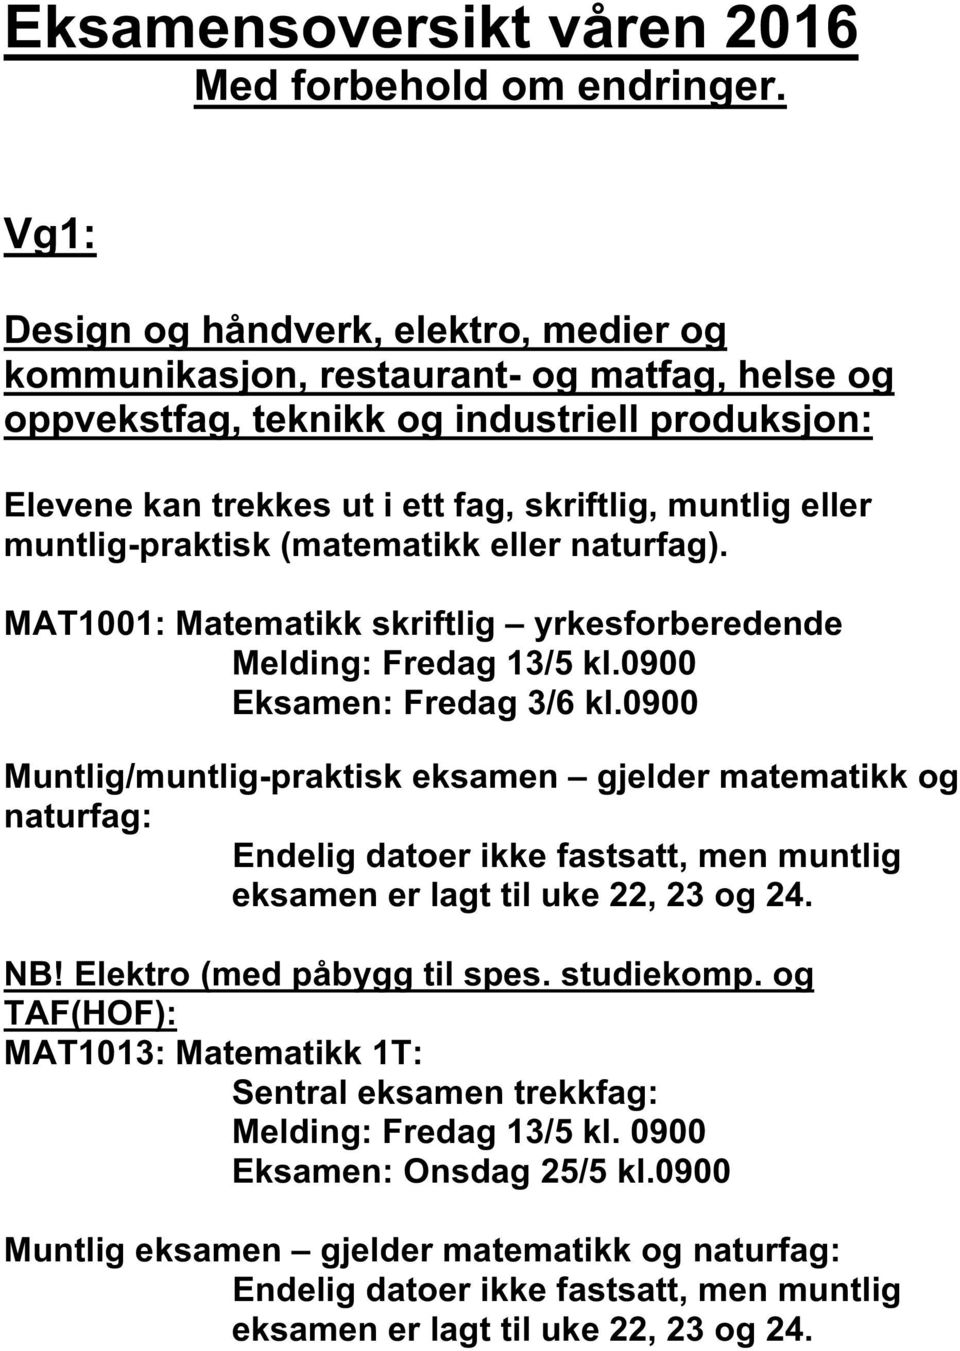 Eksamensoversikt våren 2016 Med forbehold om endringer. - PDF Gratis  nedlasting